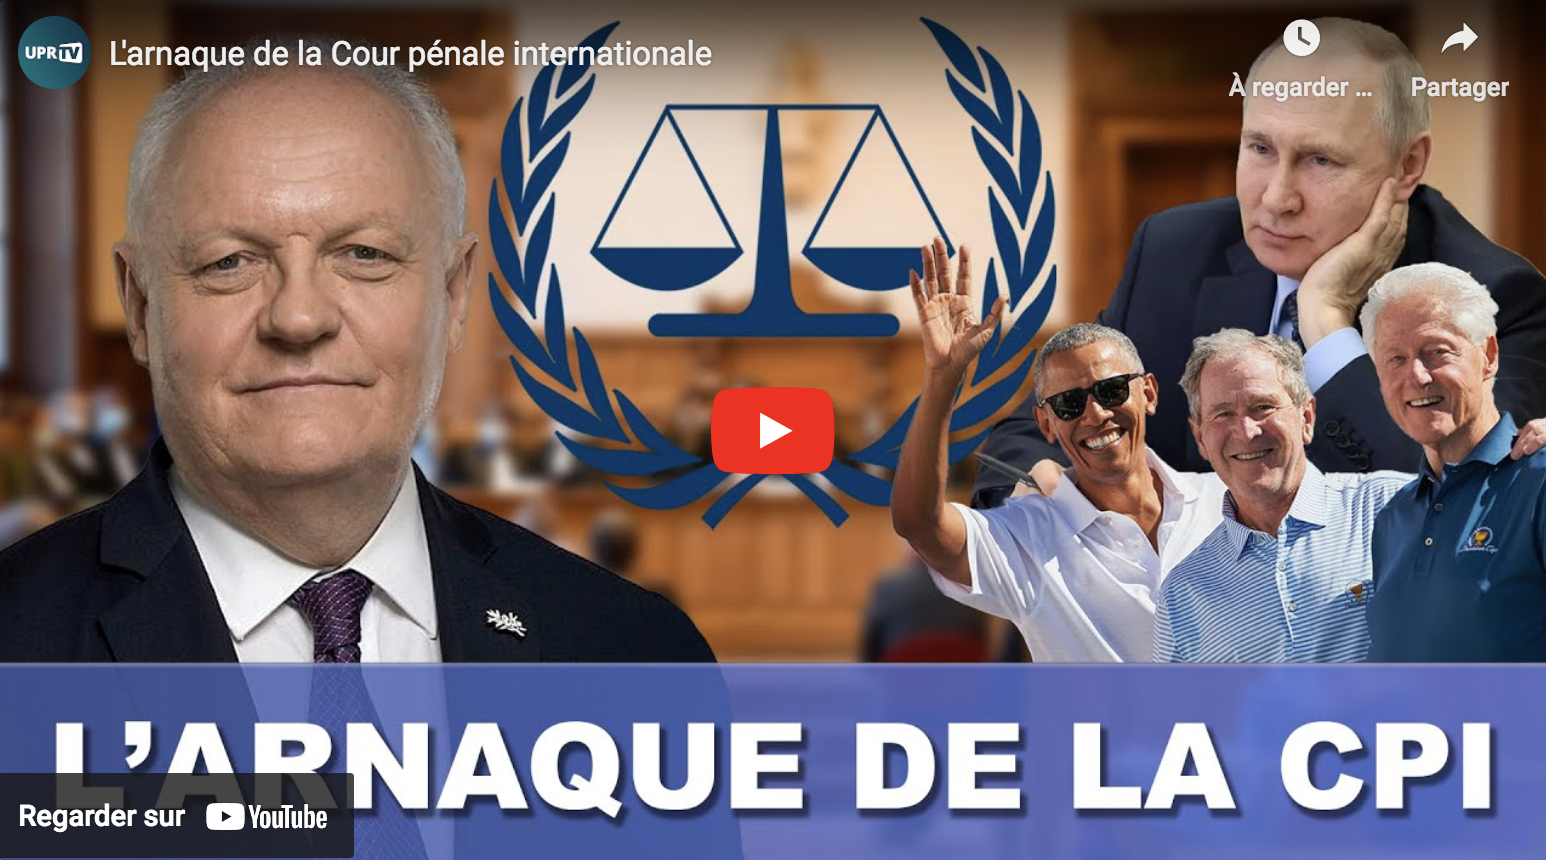 L’arnaque de la Cour pénale internationale (François Asselineau)